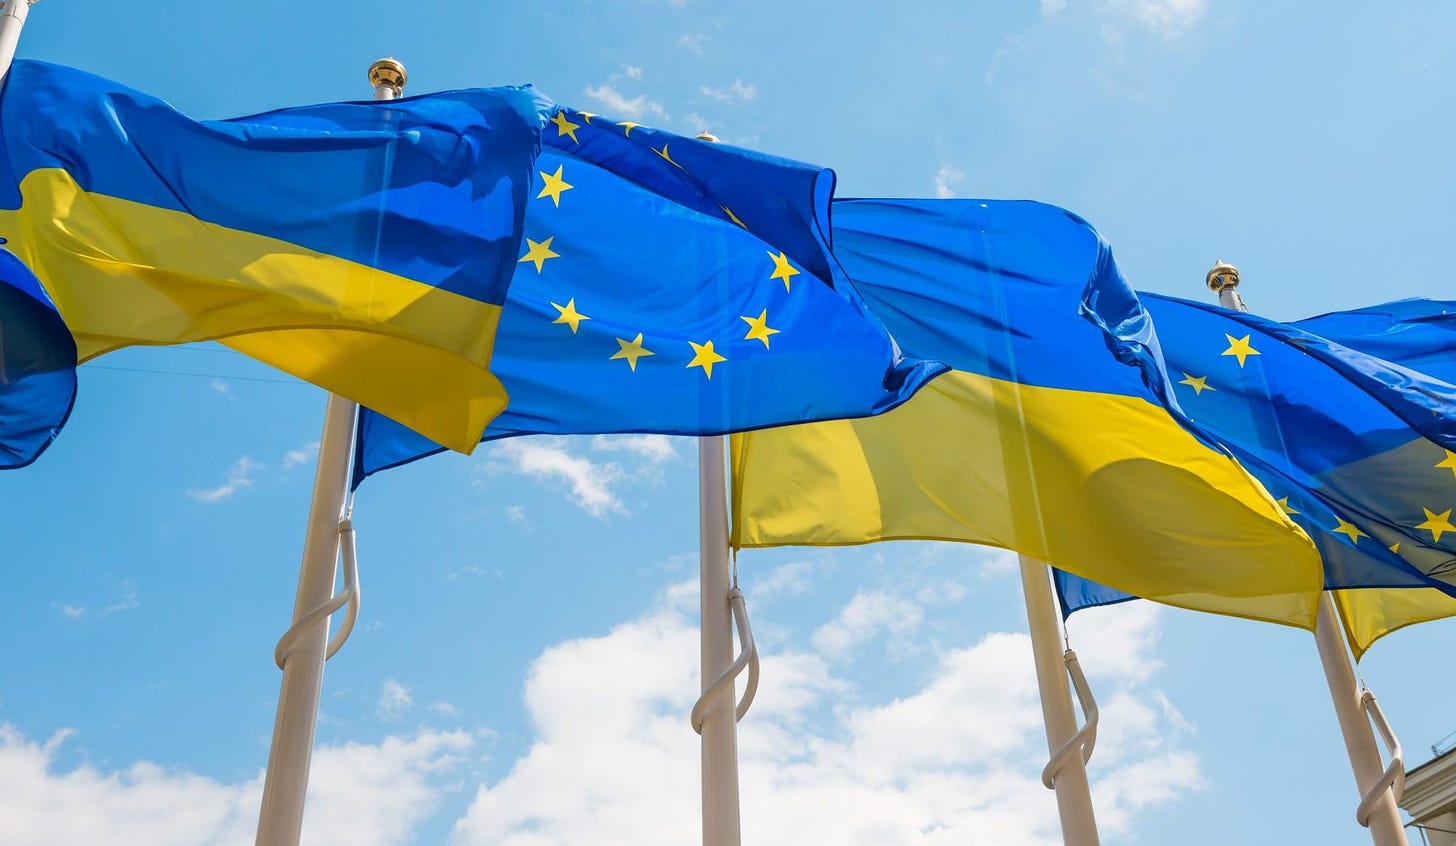 EU commitment to Ukraine totals €167 billion